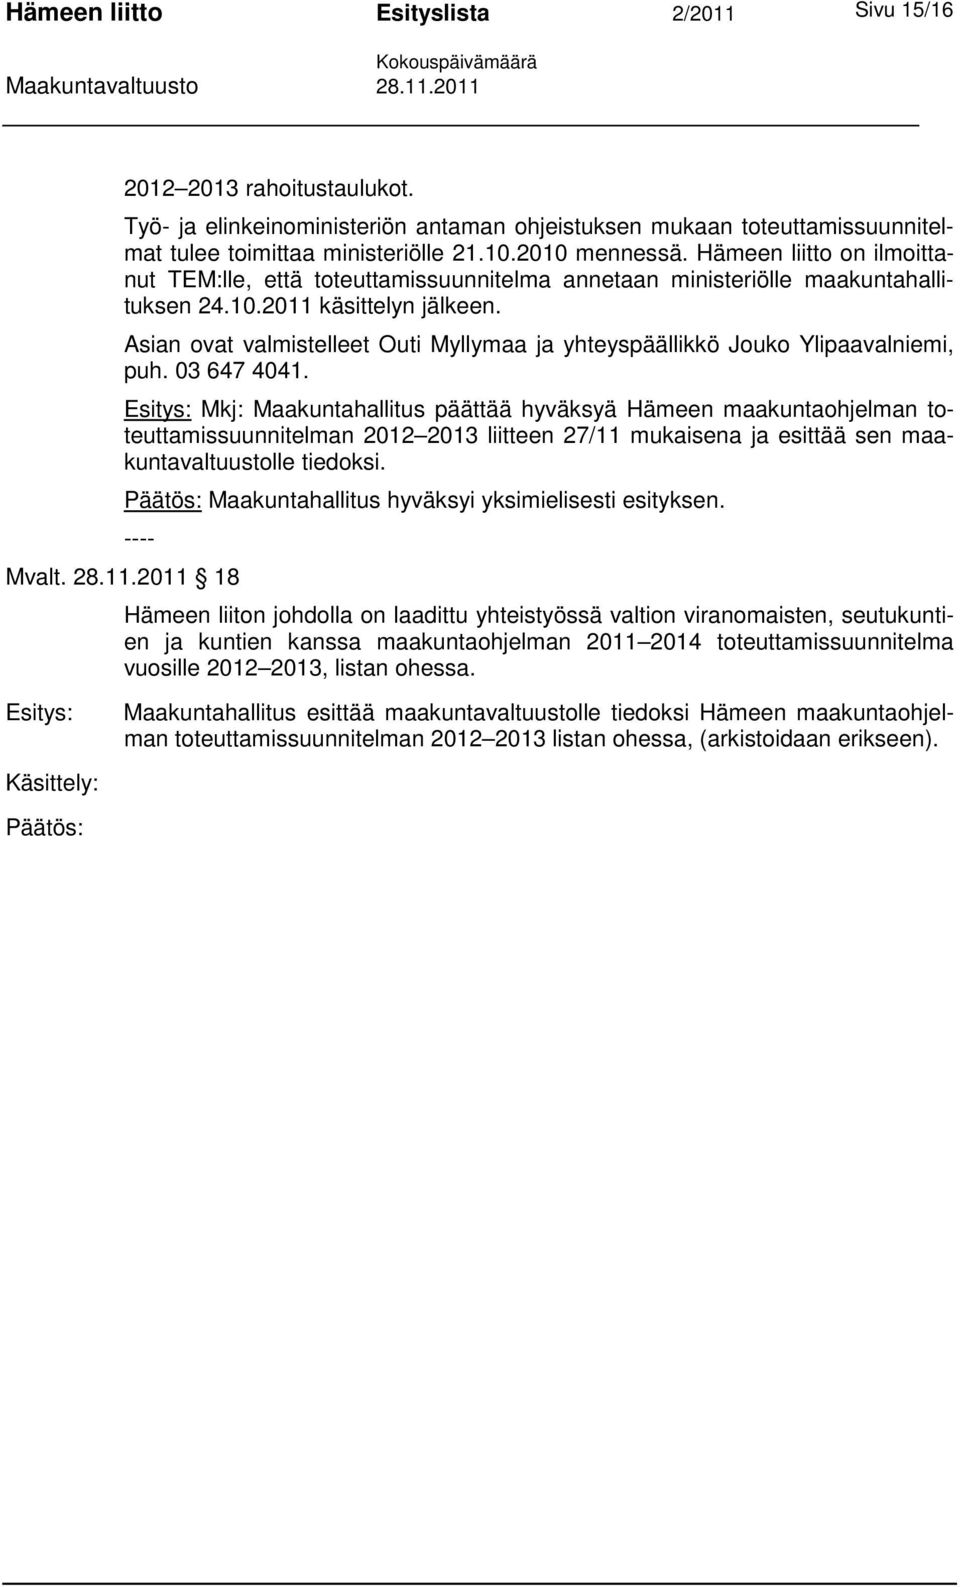 Asian ovat valmistelleet Outi Myllymaa ja yhteyspäällikkö Jouko Ylipaavalniemi, puh. 03 647 4041.